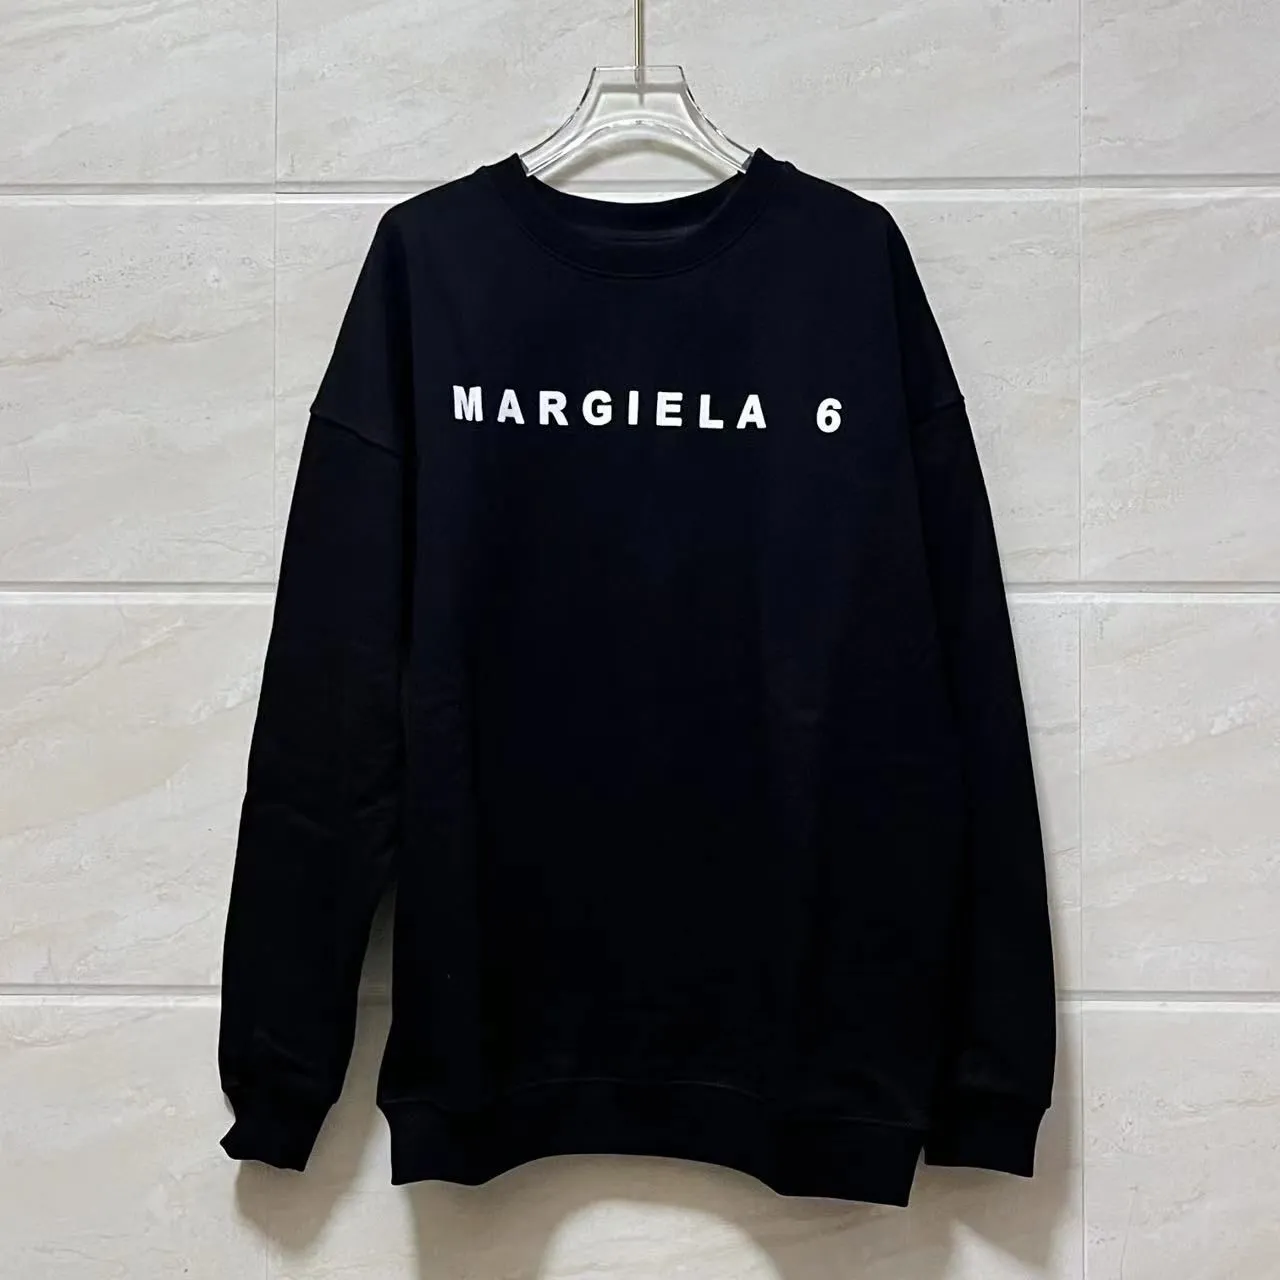 Margiela Hoodies Mens Designer Hoodies Coat Men Woman Hoodie Outwear Letter Print Sweatshirts Terry Pants Size S-XL